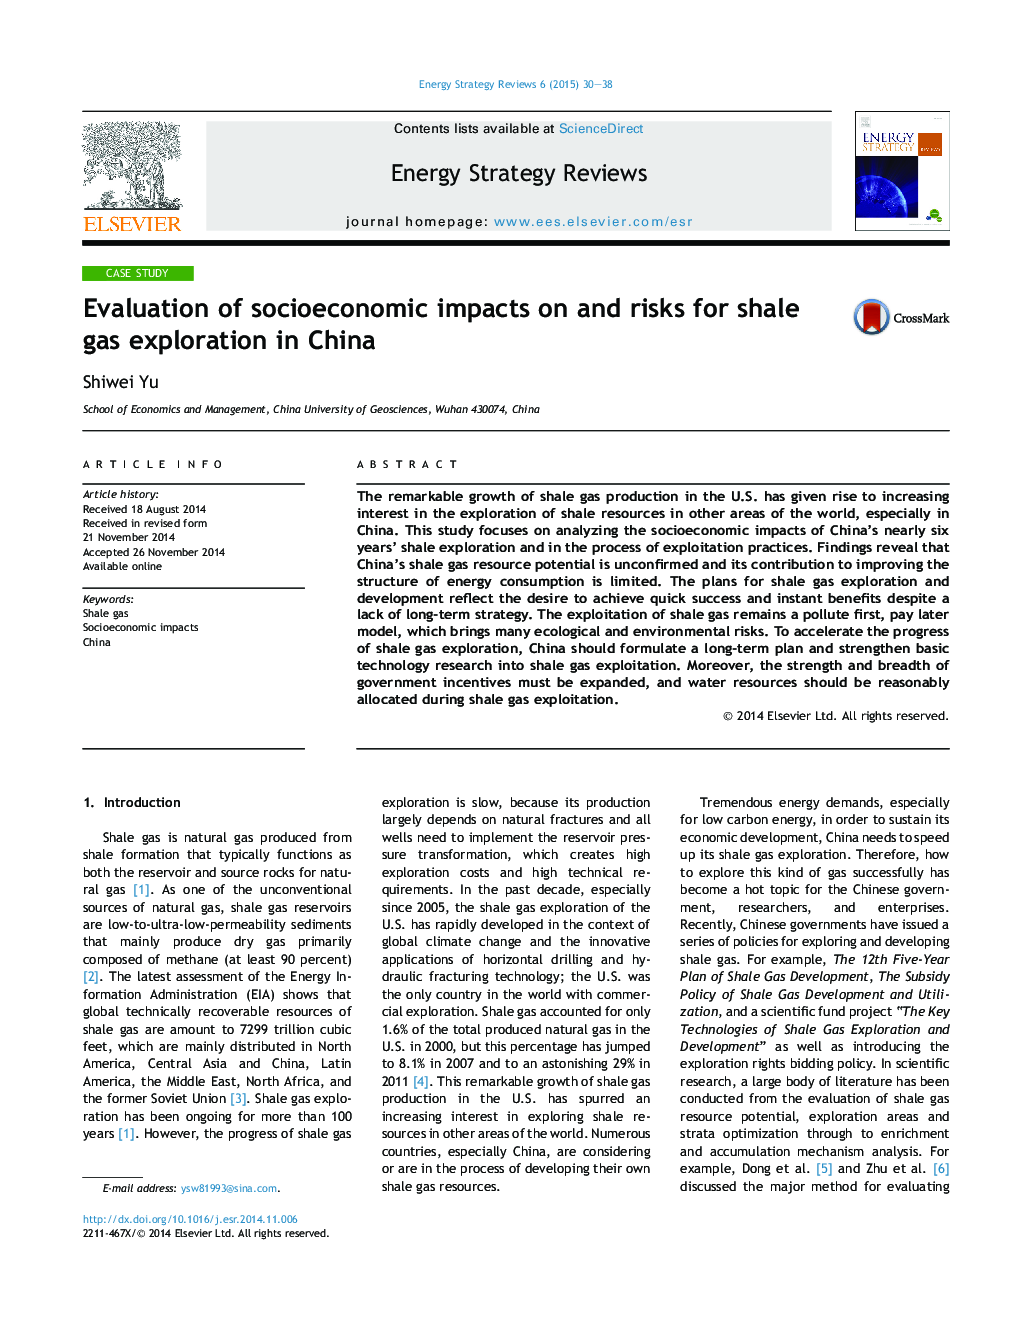 ارزیابی اثرات اجتماعی و اقتصادی برای اکتشاف گاز شیل در چین 